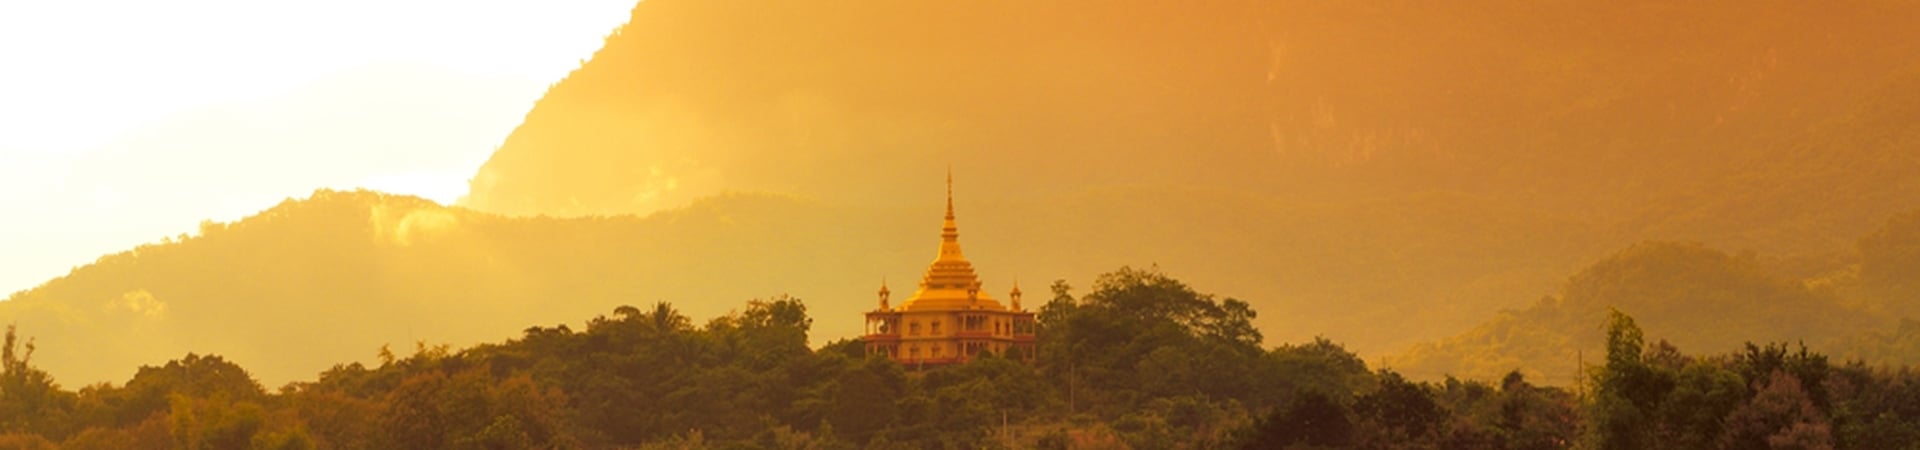 Image of Amazing Luang Prabang